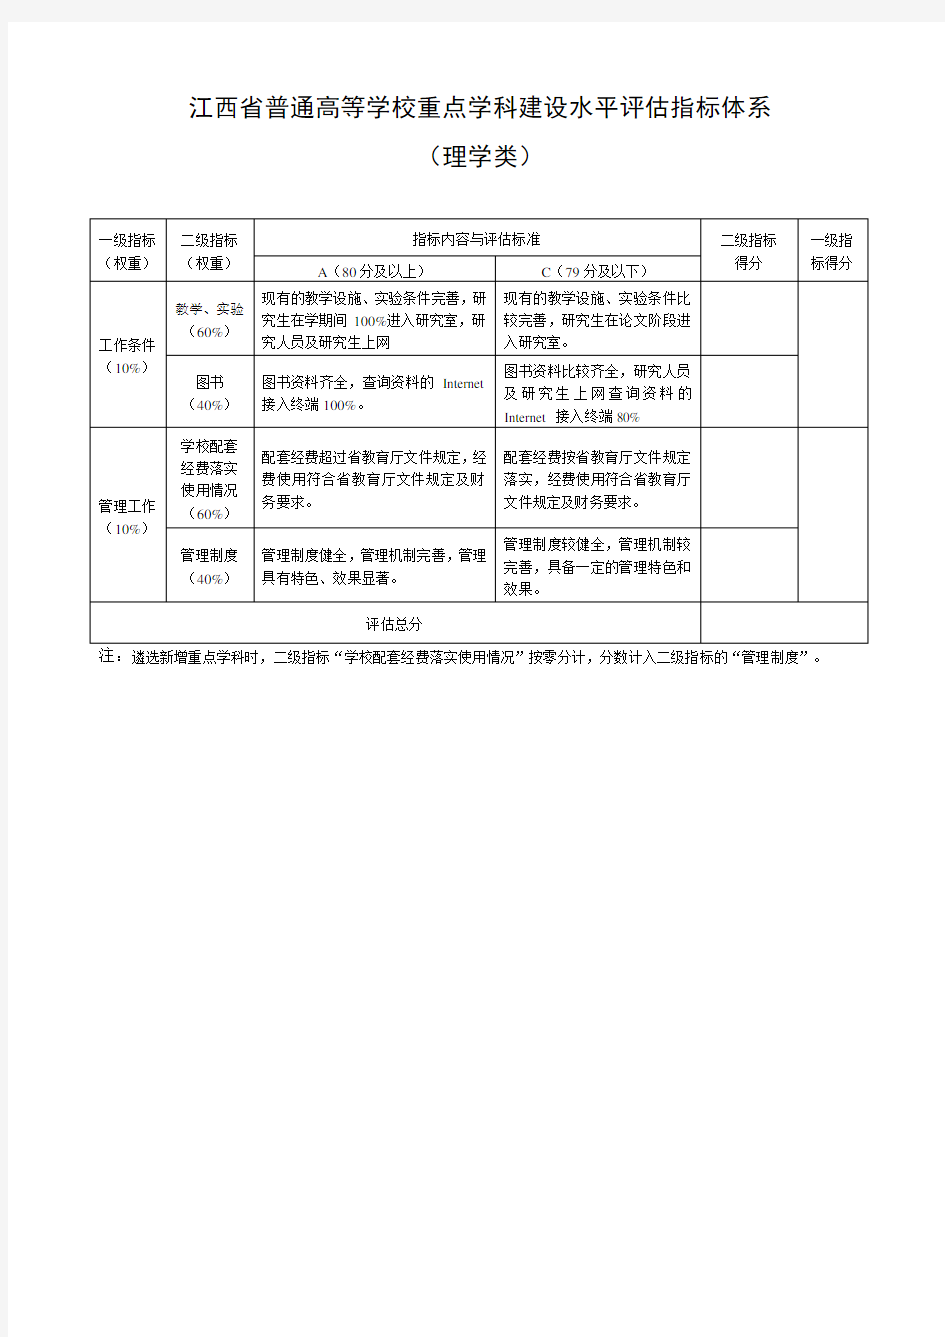 江西省普通高等学校重点学科建设水平评估指标体系